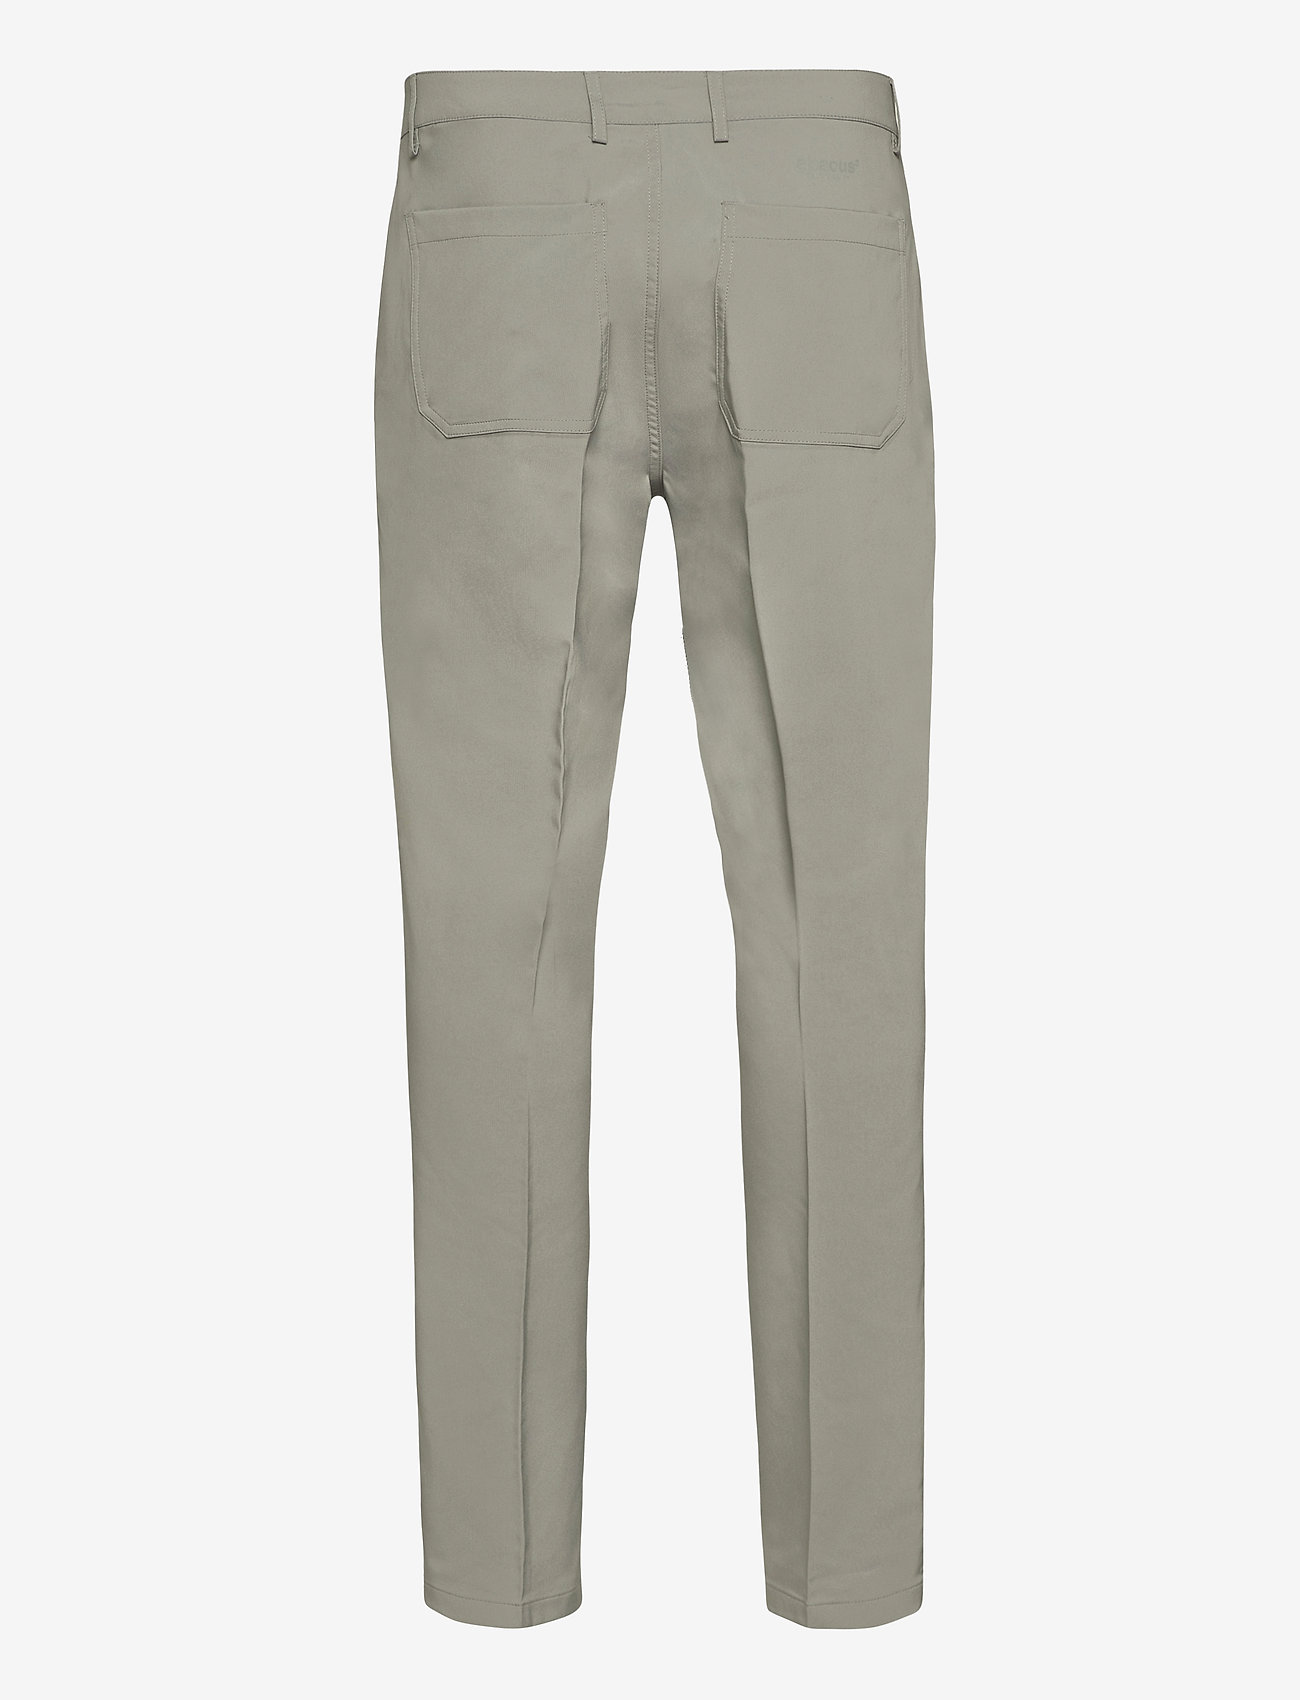 Abacus - Mens Cleek stretch trousers - golfa bikses - grey - 1